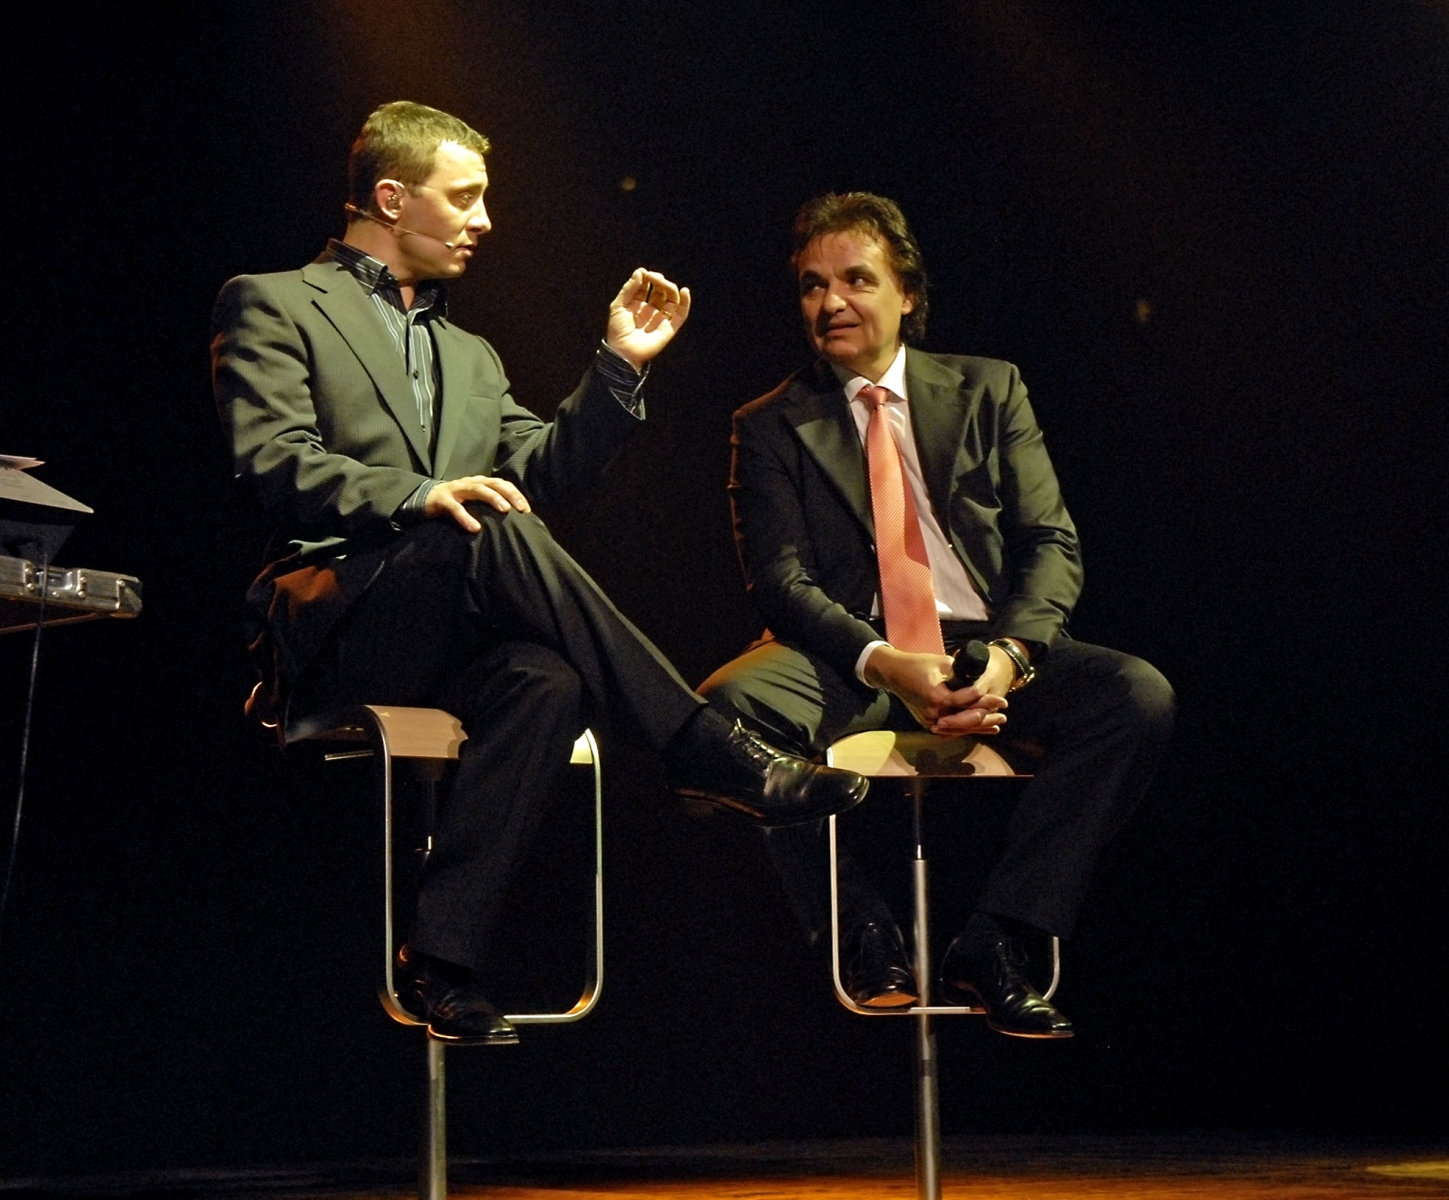 Yann Lambiel et Christian Constantin en 2007, lors de la première participation de l'humoriste valaisan au gala sédunois.